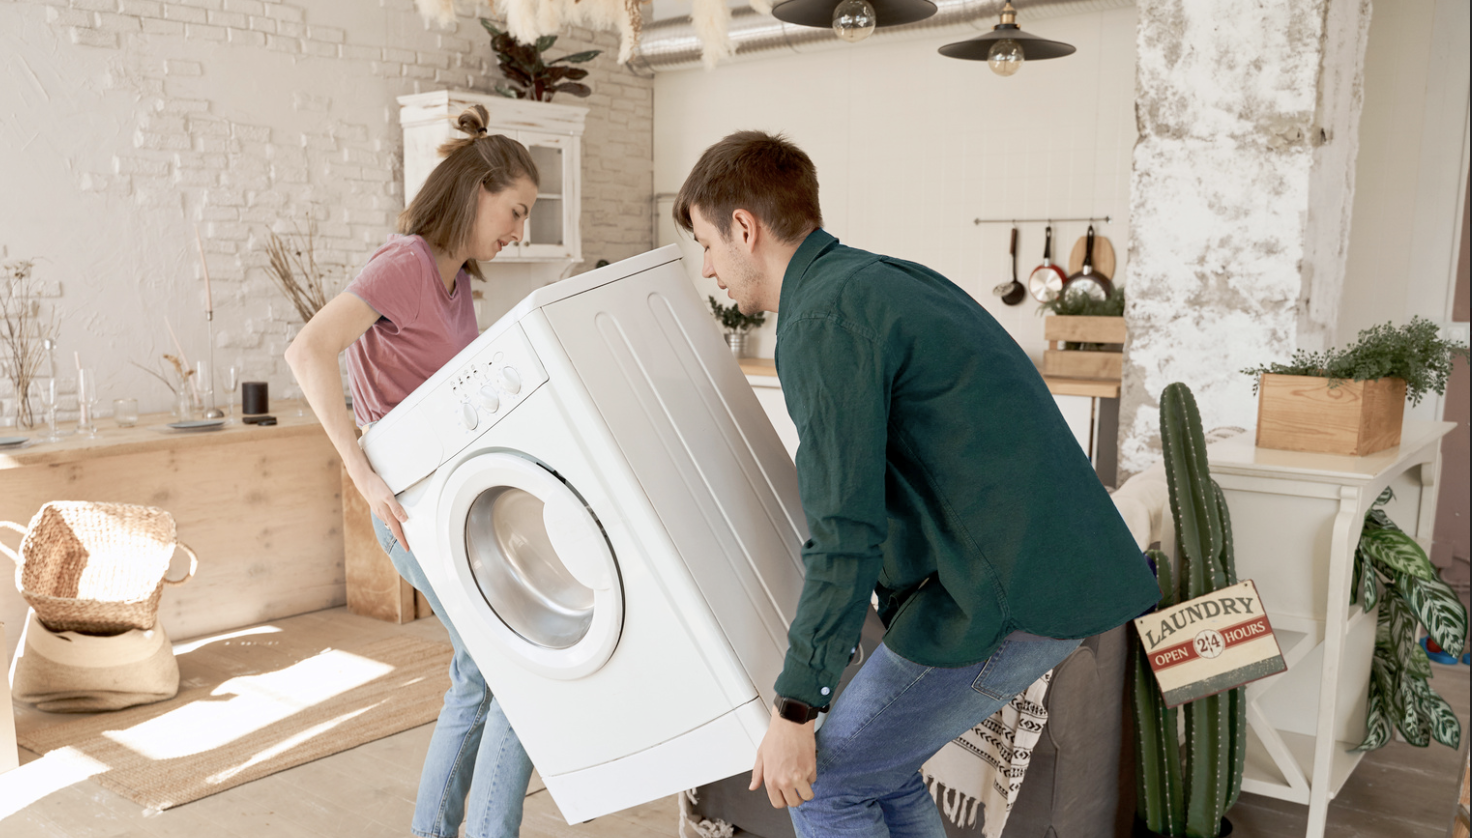 Conseils pour installer votre sèche-linge sur votre machine à laver